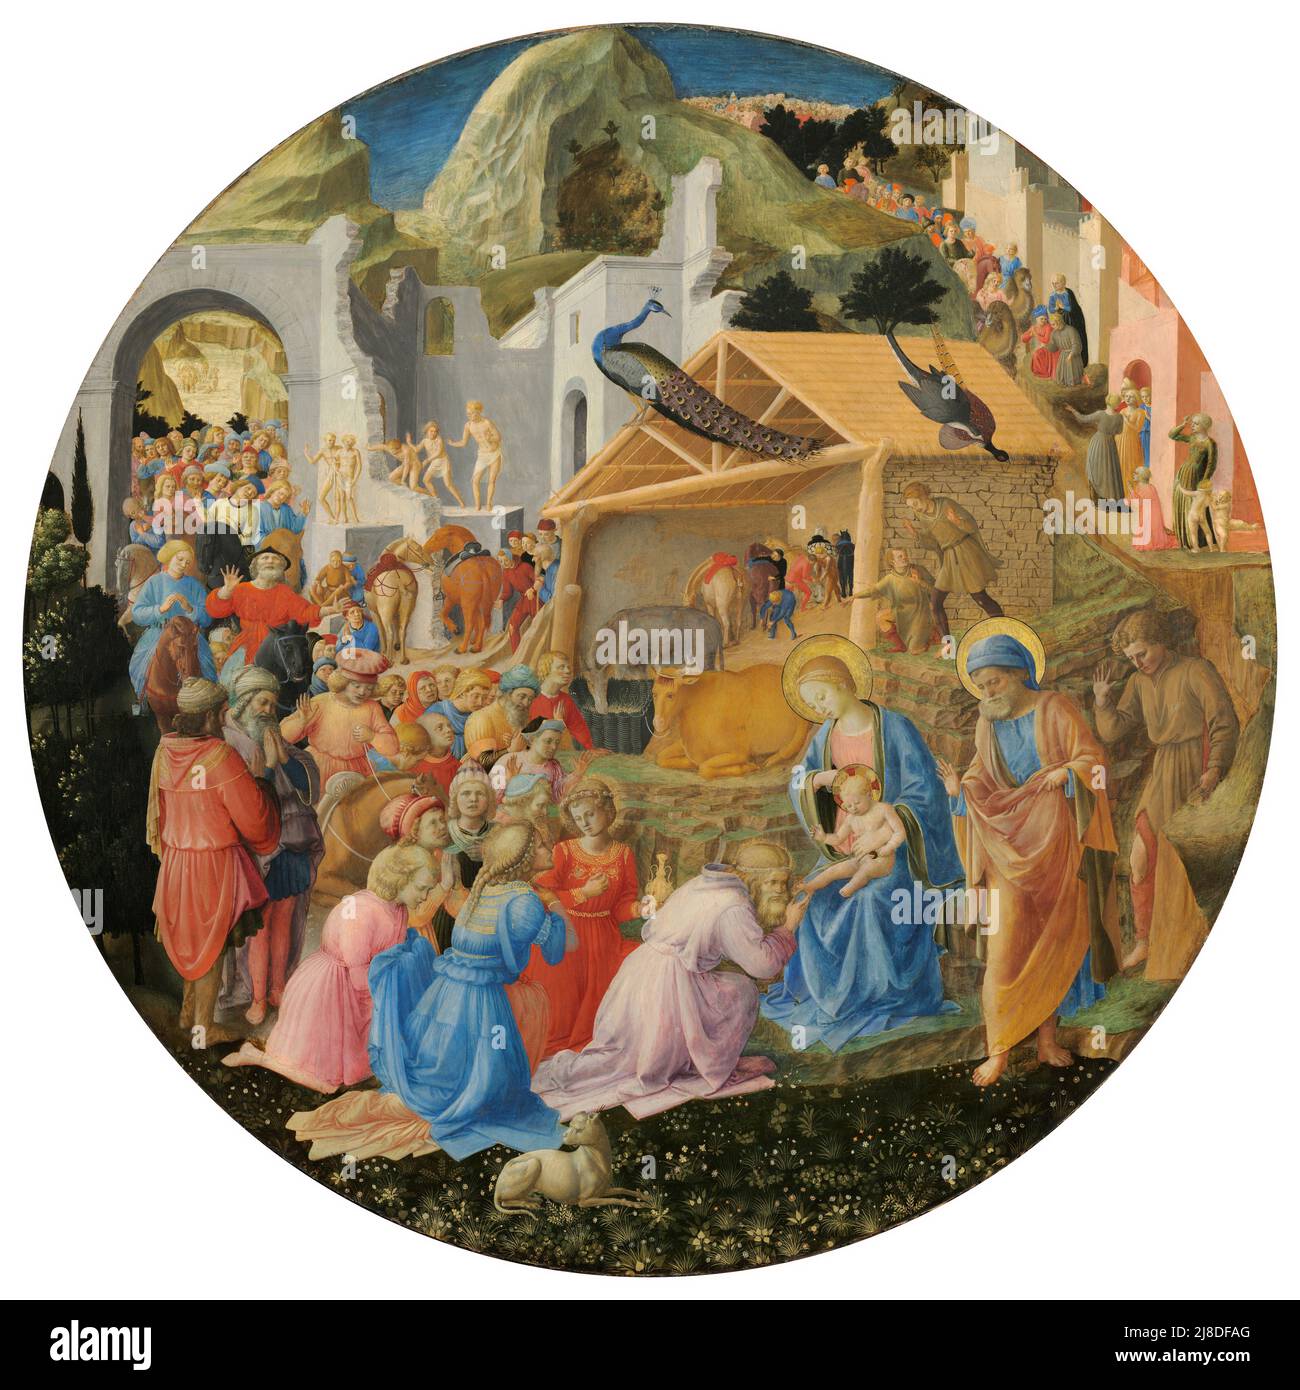 Die Anbetung der Könige von Fra Angelico und Filippo Lippi. In diesem christlichen Mythos kommen drei Weise Männer oder Könige, um den neugeborenen jesus zu besuchen und ihn als den messias und Sohn gottes anzuerkennen. Stockfoto